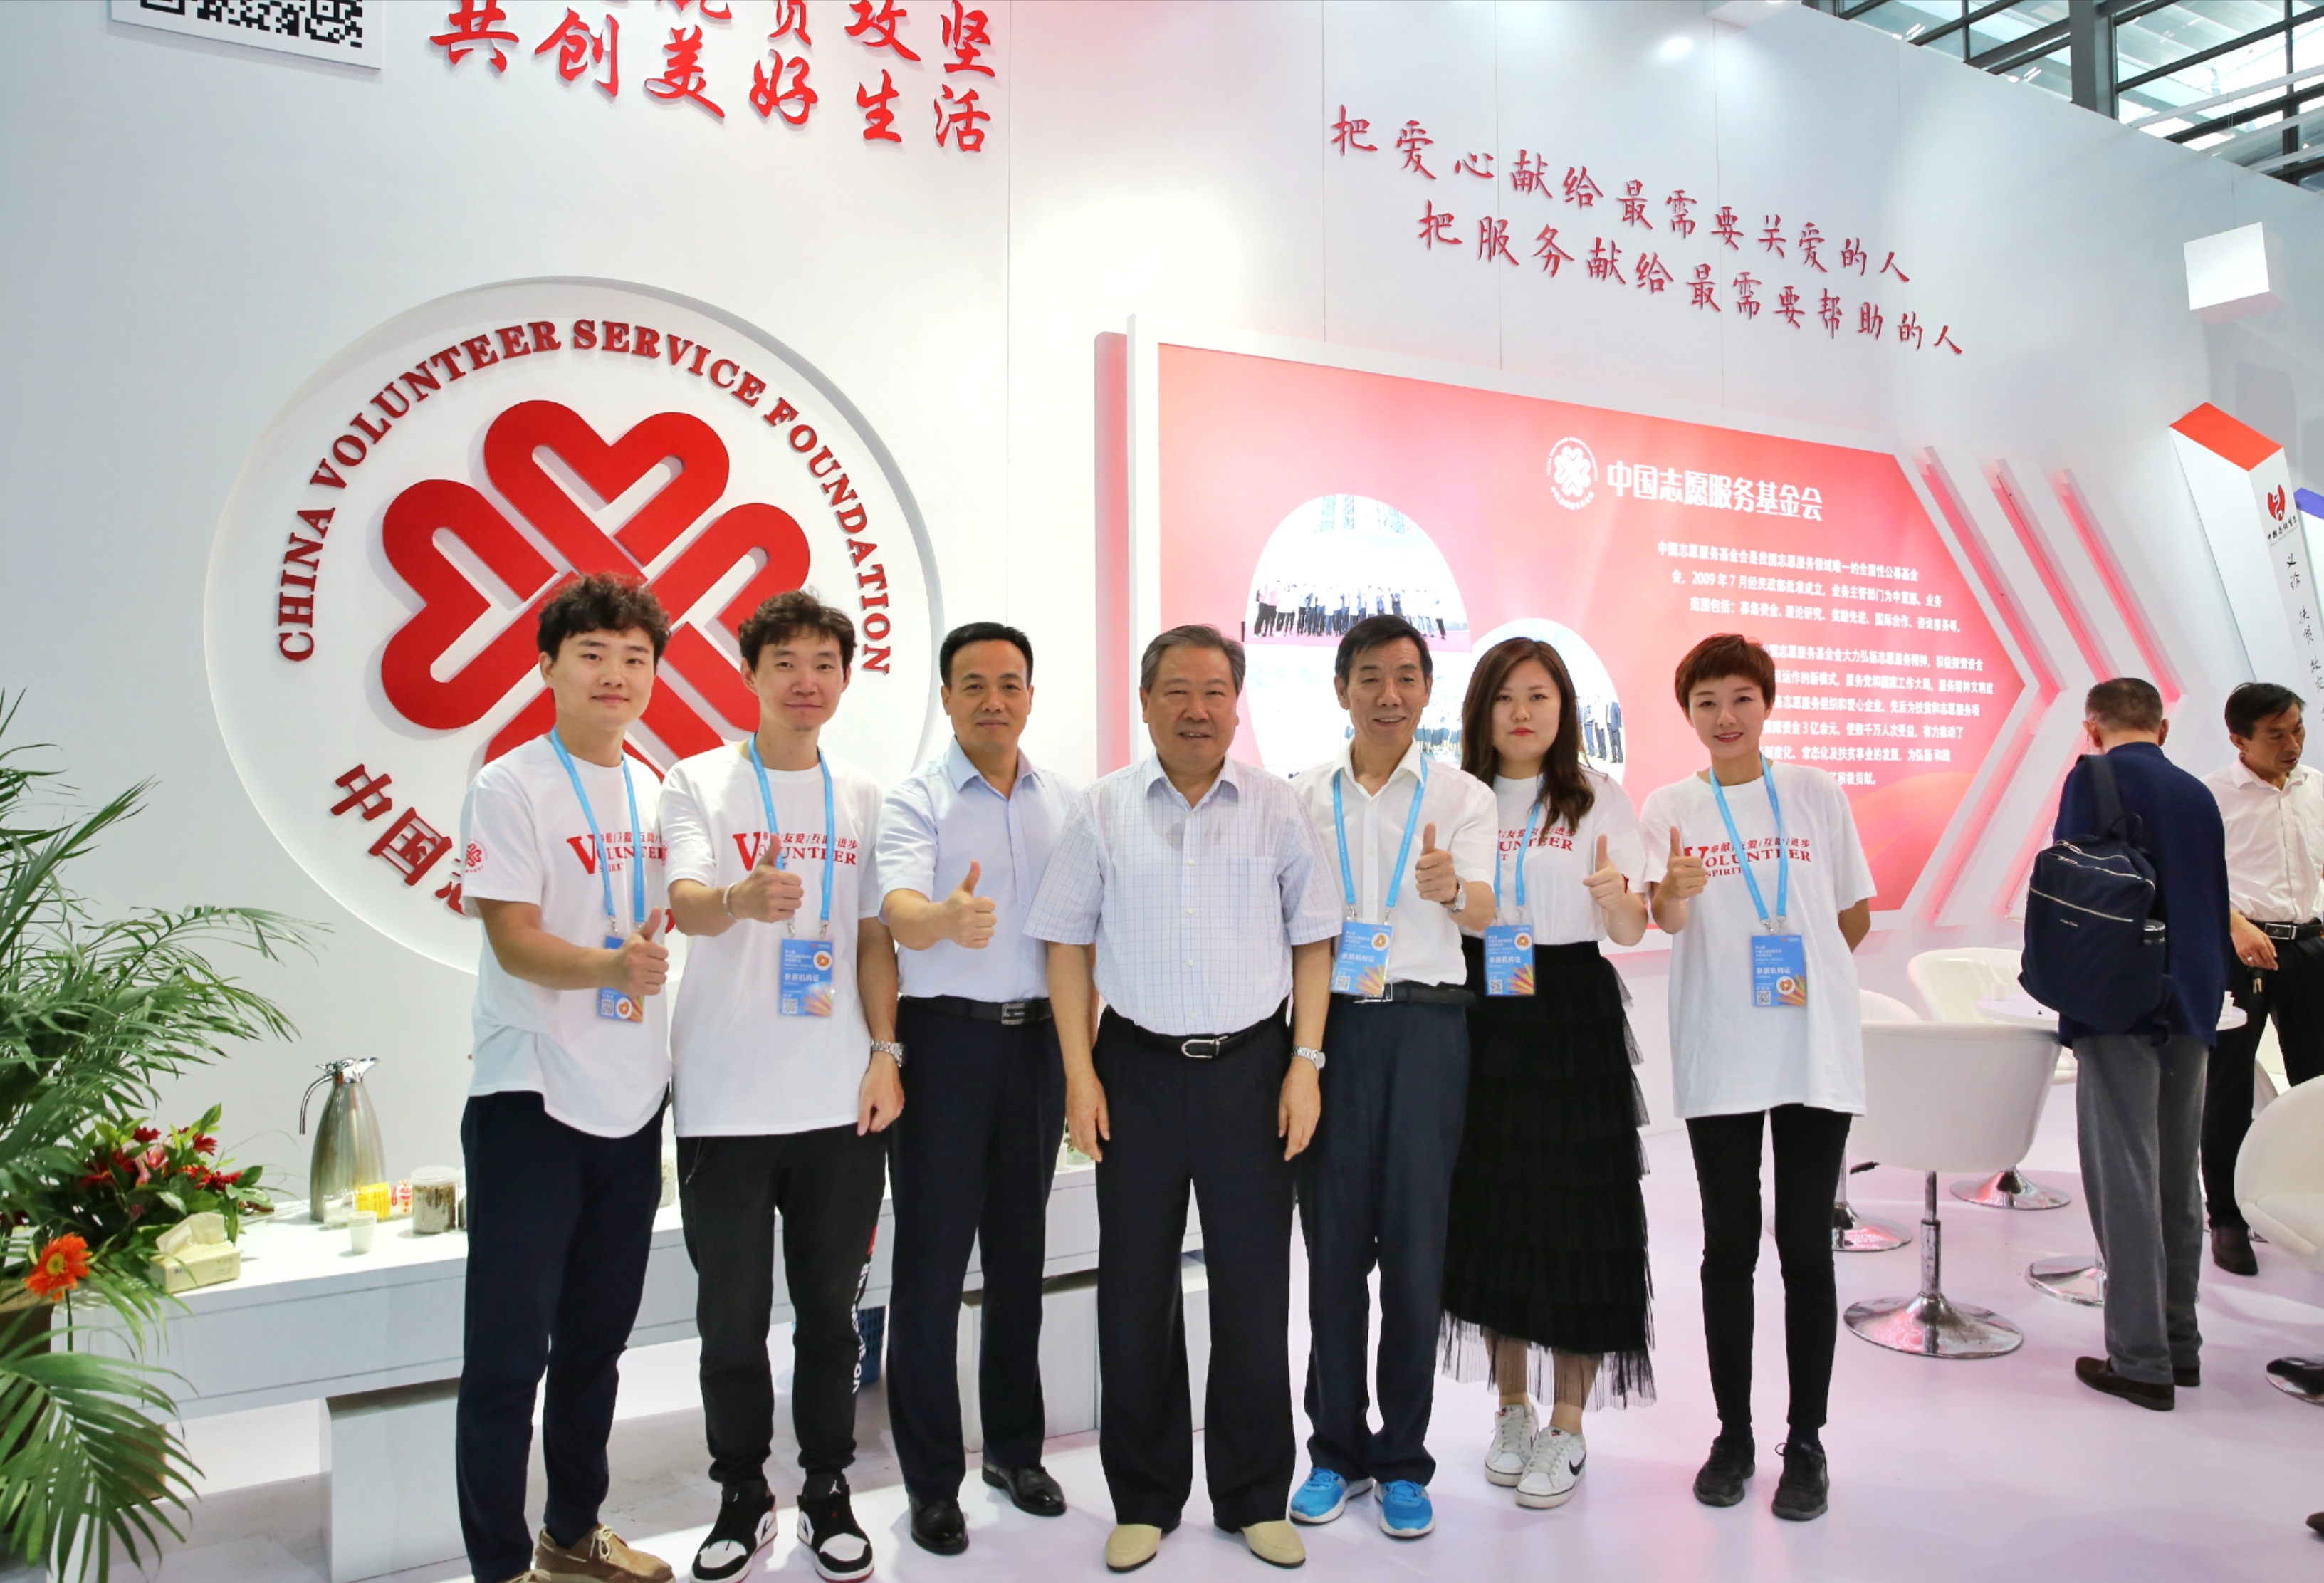 中国志愿服务基金会参展第七届中国慈展会获得圆满成功